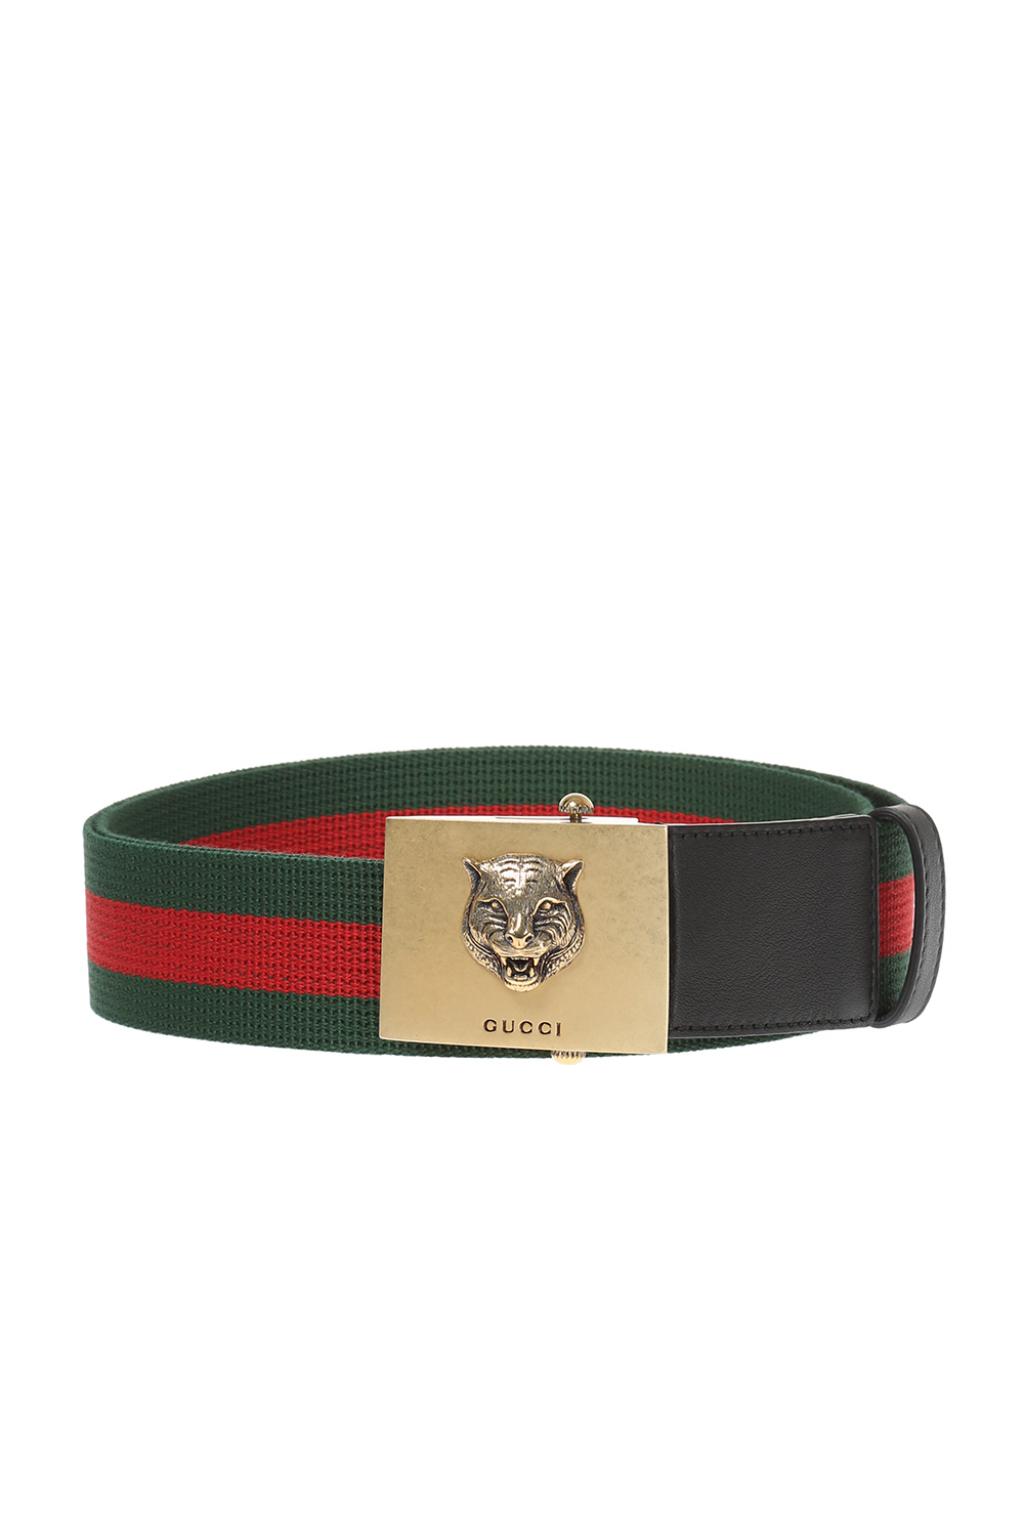 Tiger head belt Gucci - Vitkac HK